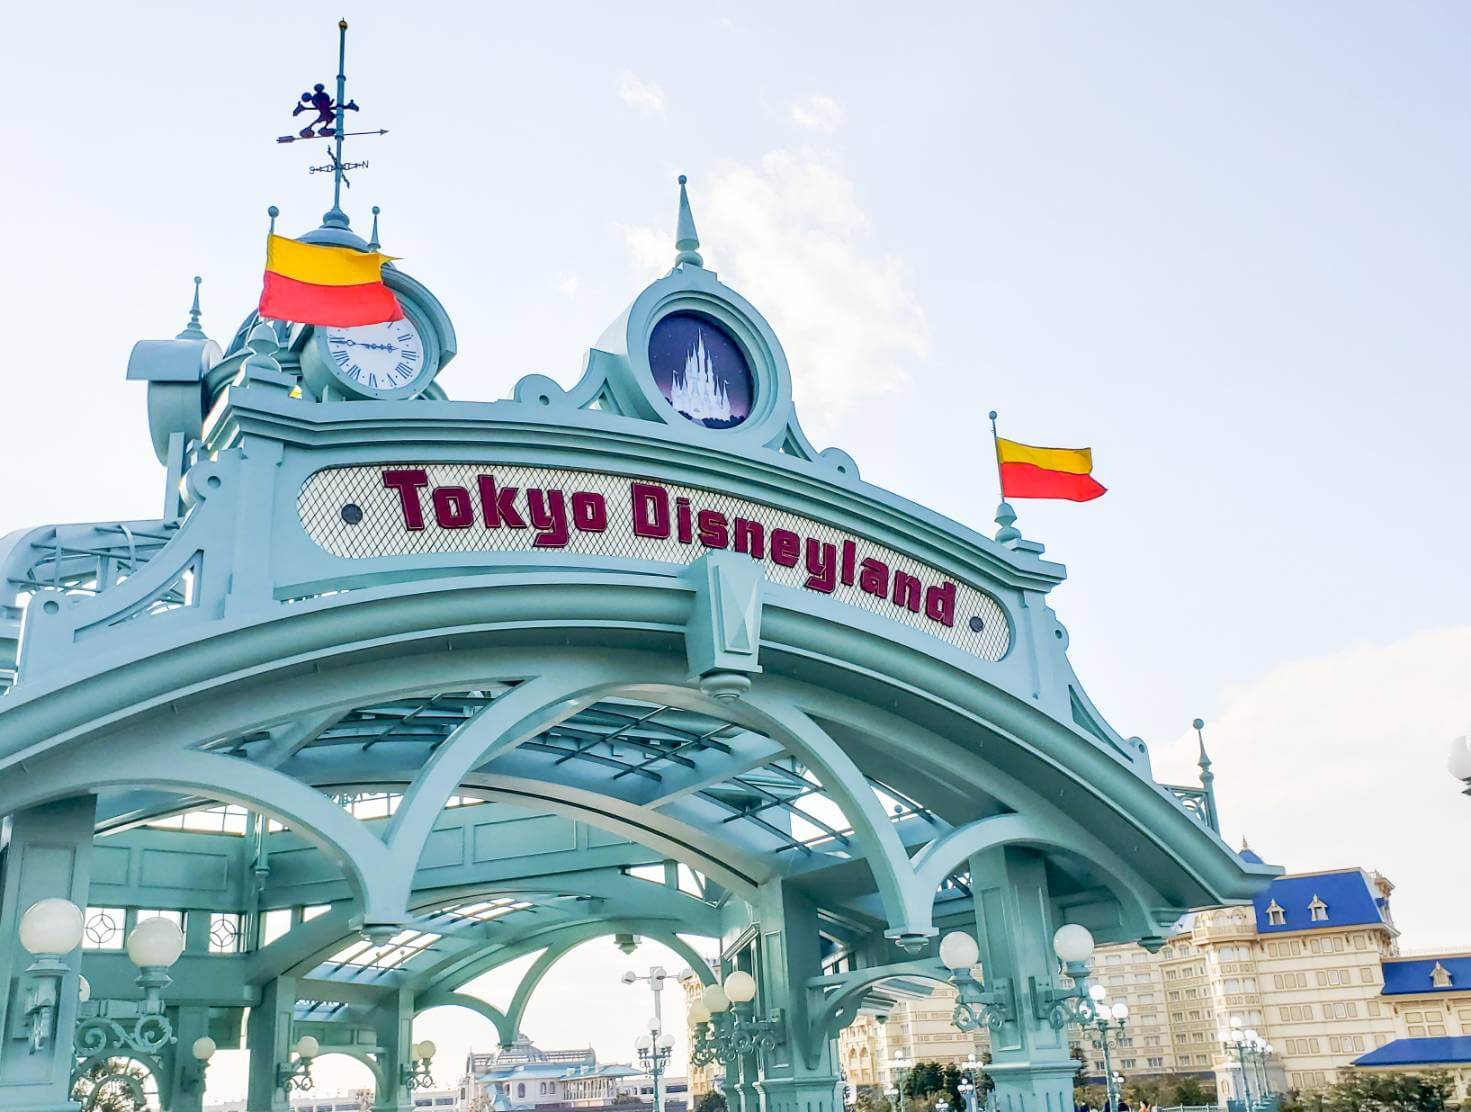 舞浜駅と東京ディズニーランドを結ぶ橋｢ペデストリアンデッキ｣にあるブロンズ像